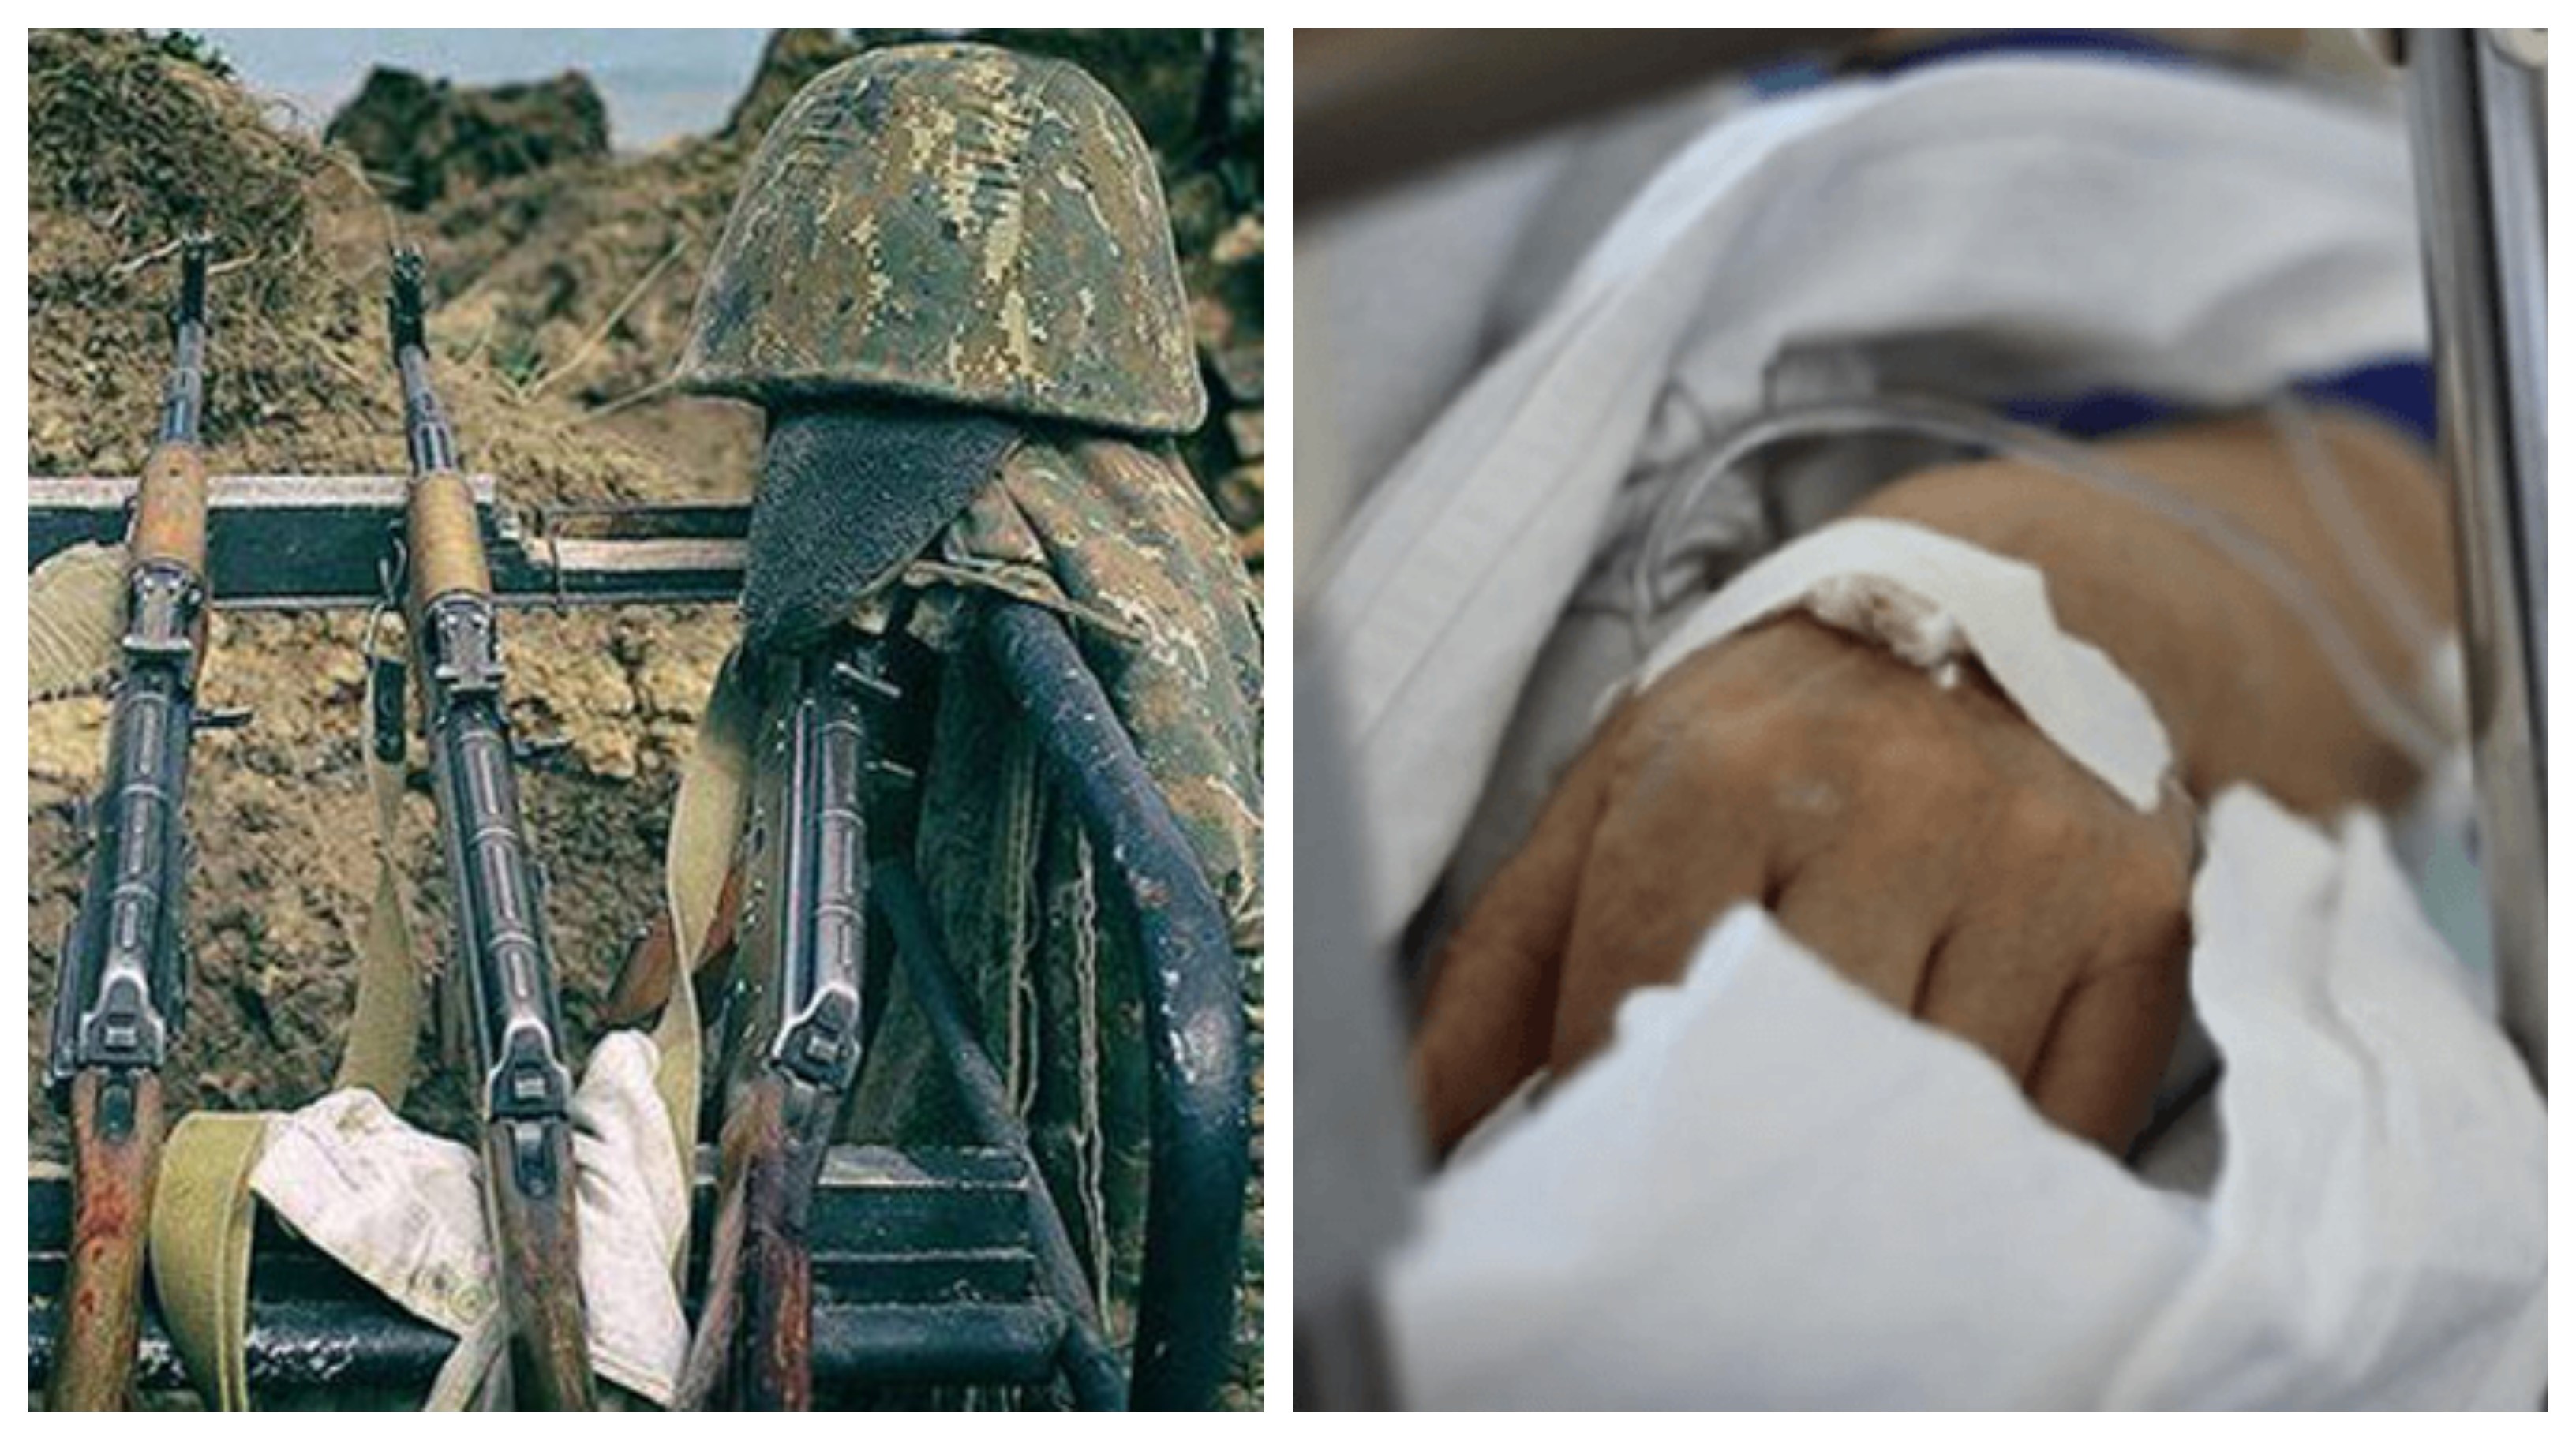 Չորս զինծառայողի կյանք խլած ողբերգական վթարի հետևանքով կա նաև 20 վիրավոր